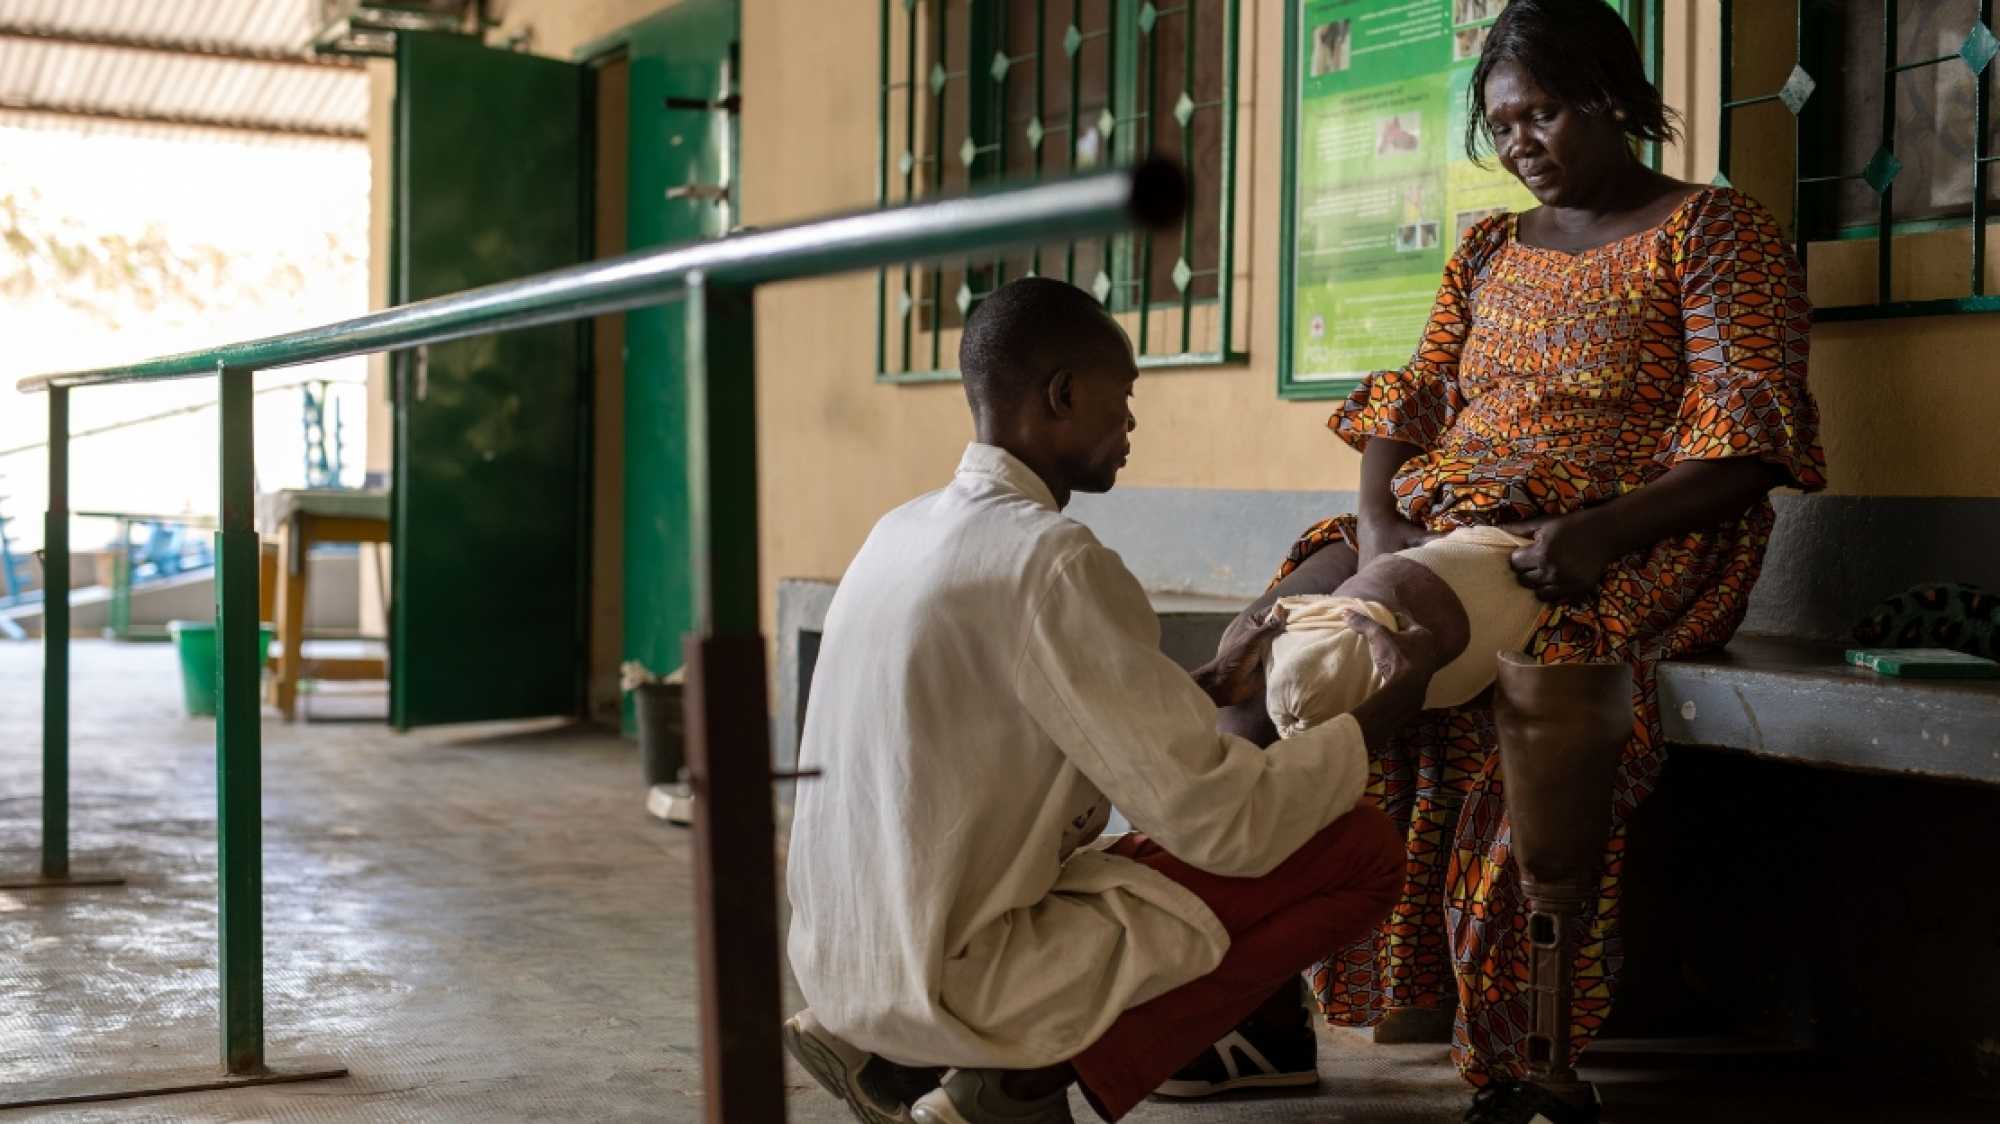 Eine afrikanische Frau sitzt auf einer Bank, ihr links Bein ist ab dem Knie amputiert. Neben ihr steht ihre Beinprothese. Vor ihr kniet ein HI-Mitarbeiter, der ihr Bein untersucht.